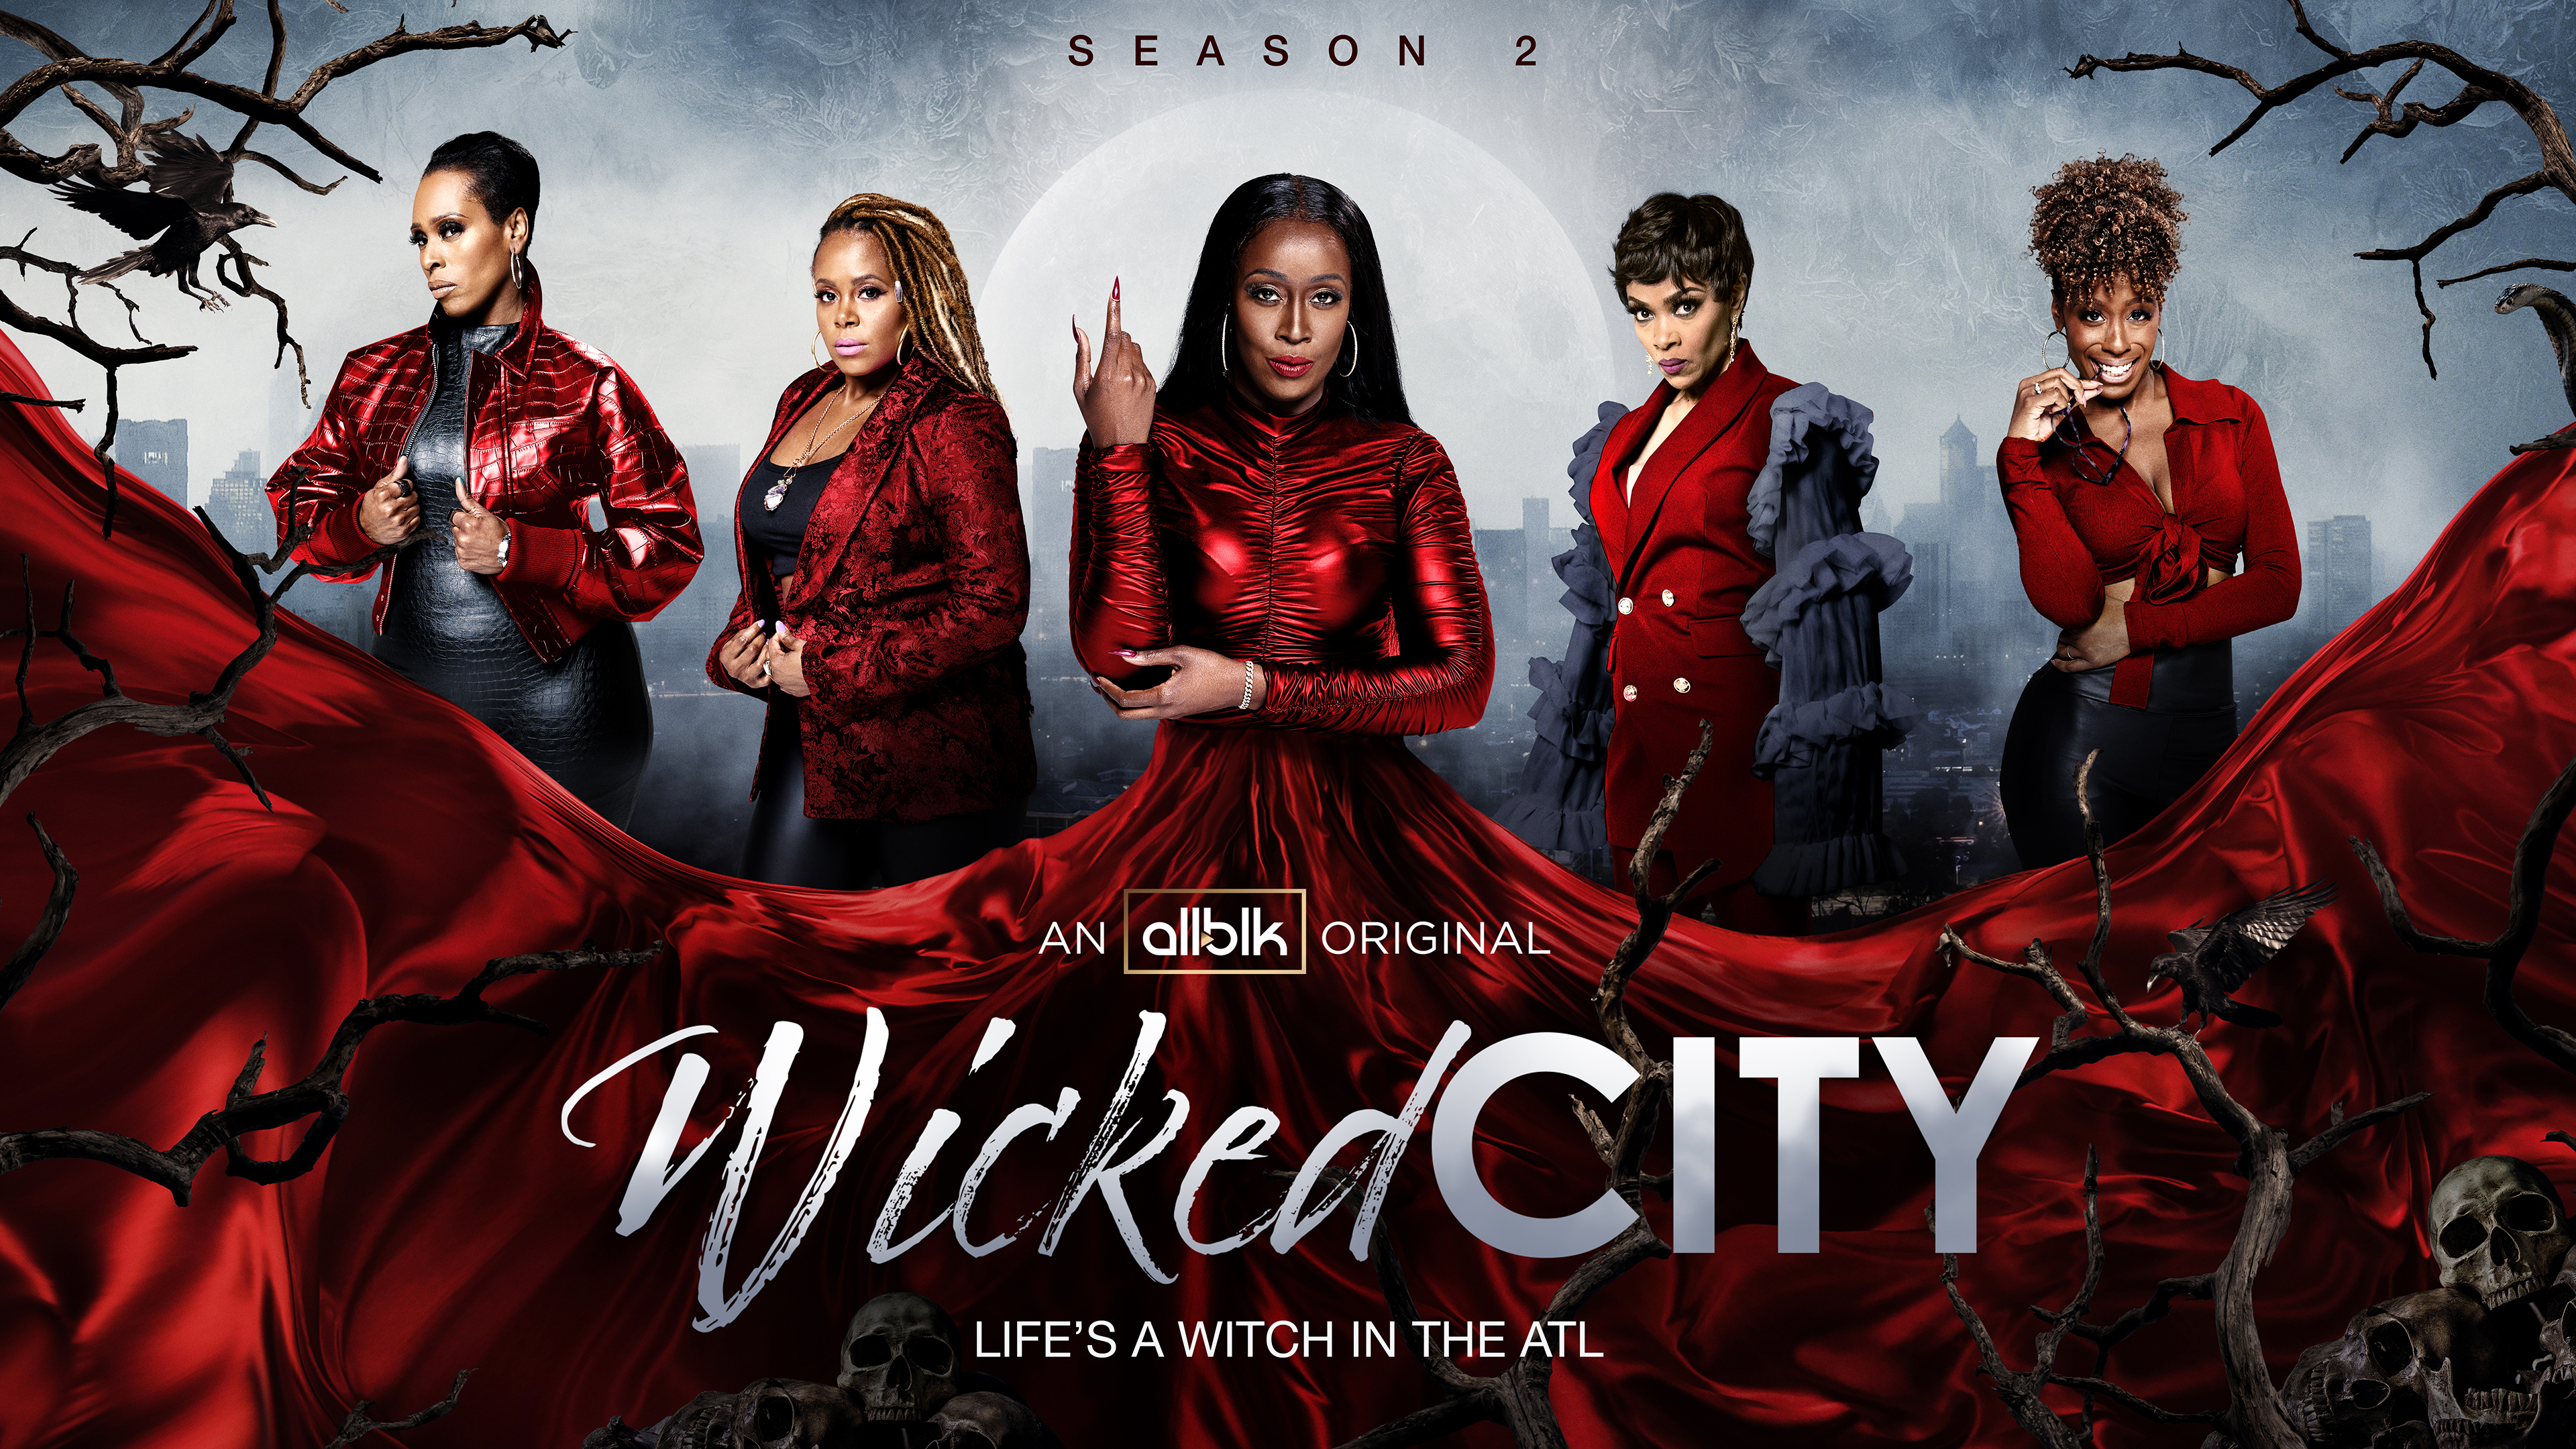 Wicked City Season 2